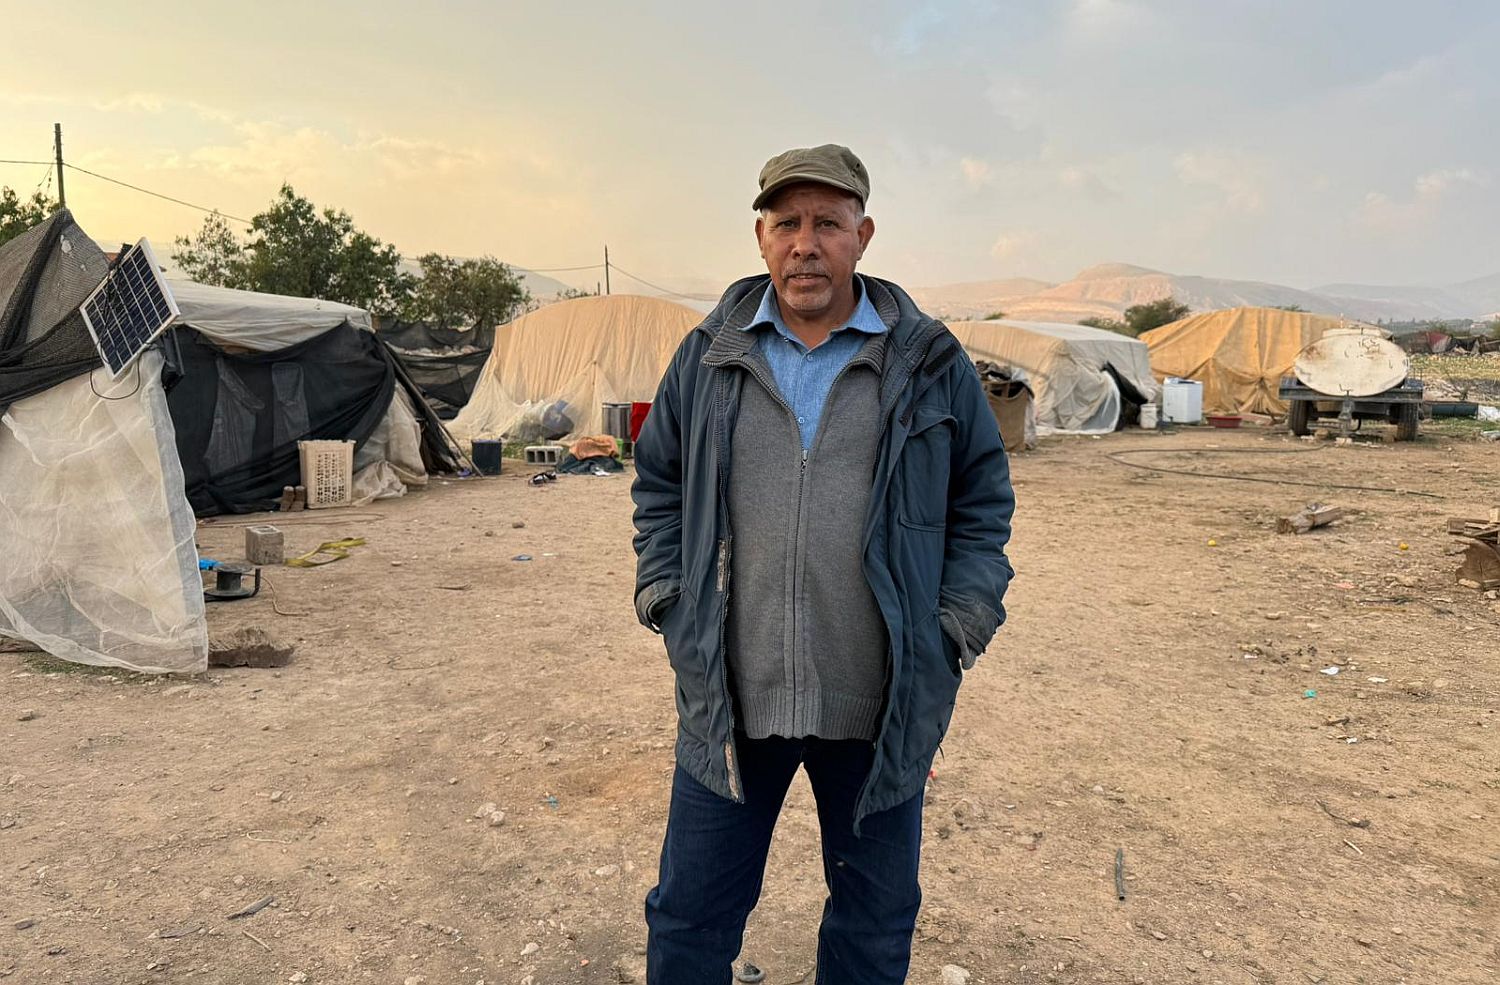 "הפכו אותנו לפועלים". מוסא מליחאת ליד האוהל שהפך לביתו (צילום: יובל אברהם)